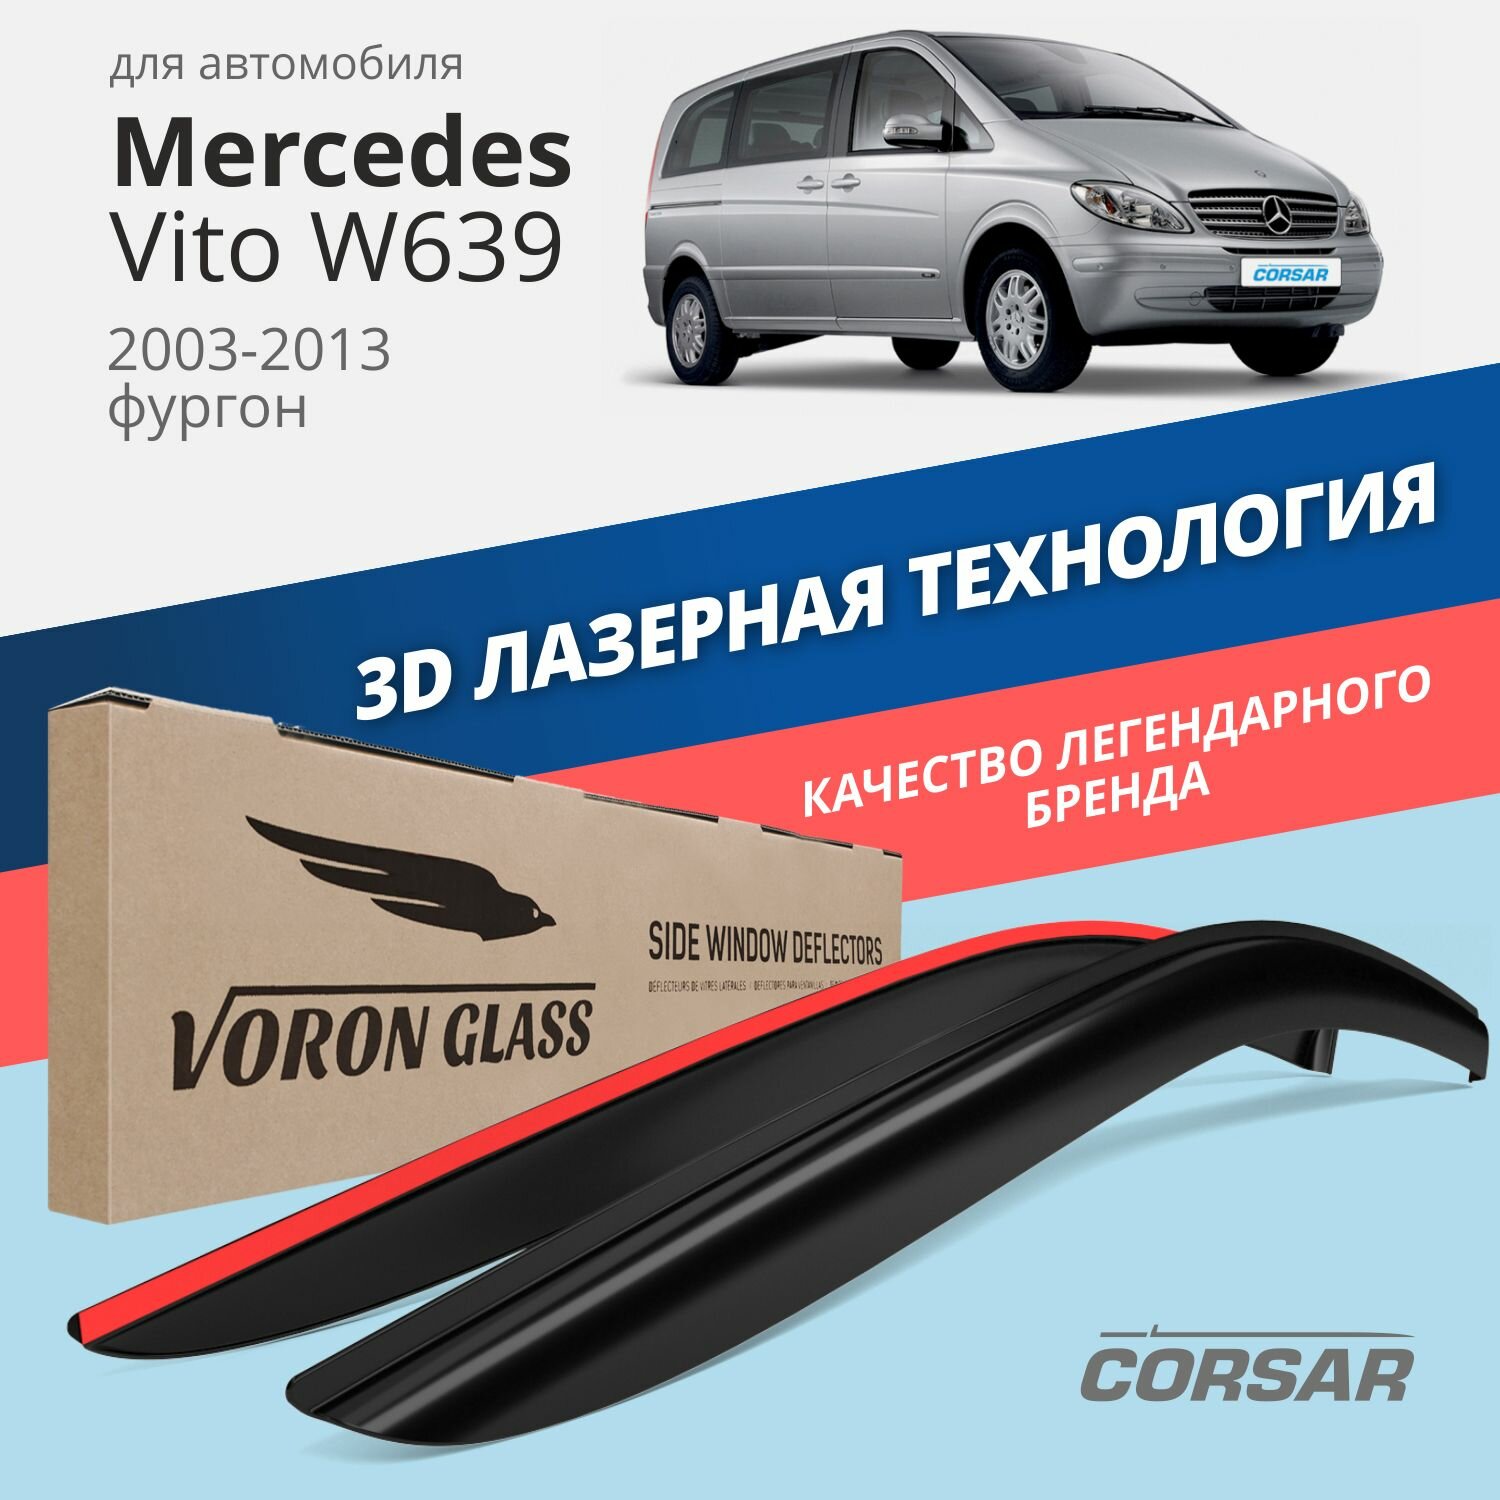 Дефлекторы окон Voron Glass серия Corsar для Mercedes Vito W639 2003-2013 накладные 2 шт.